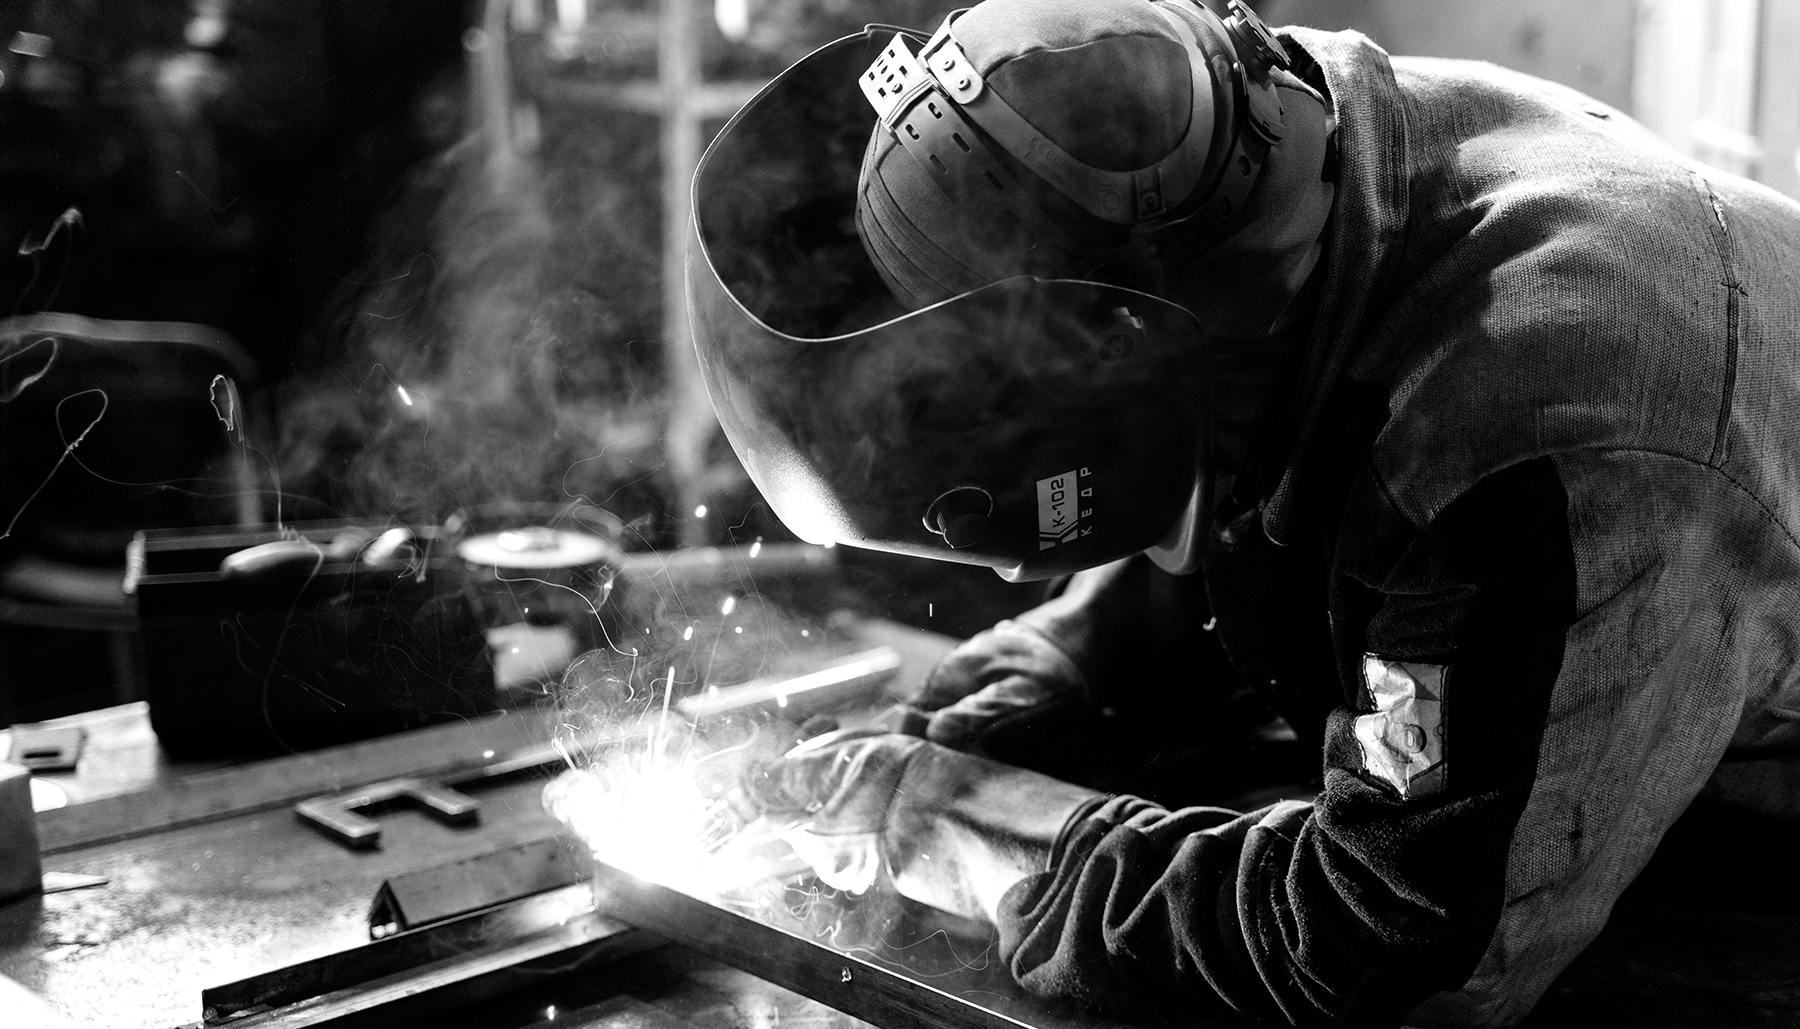 Imagen de un soldader soldando metal en blanco y negro